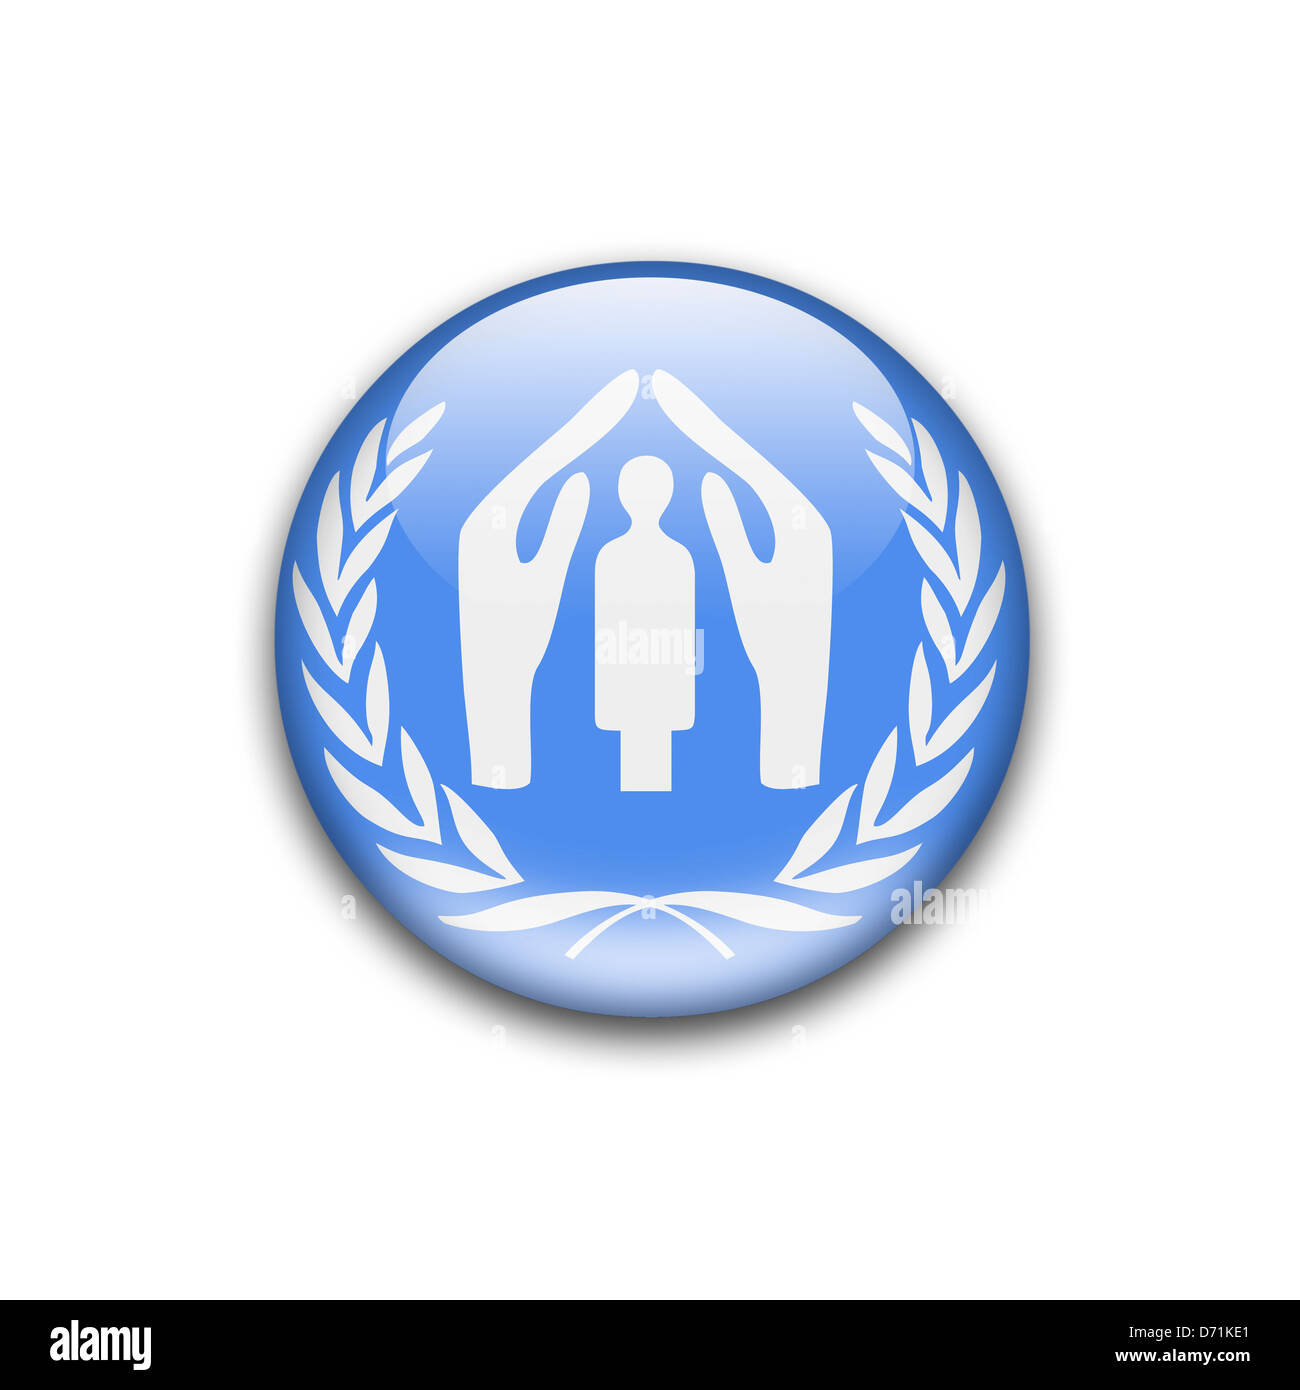 UNHCR / UN Refugee Agency logo symbol icon flag Stock Photo